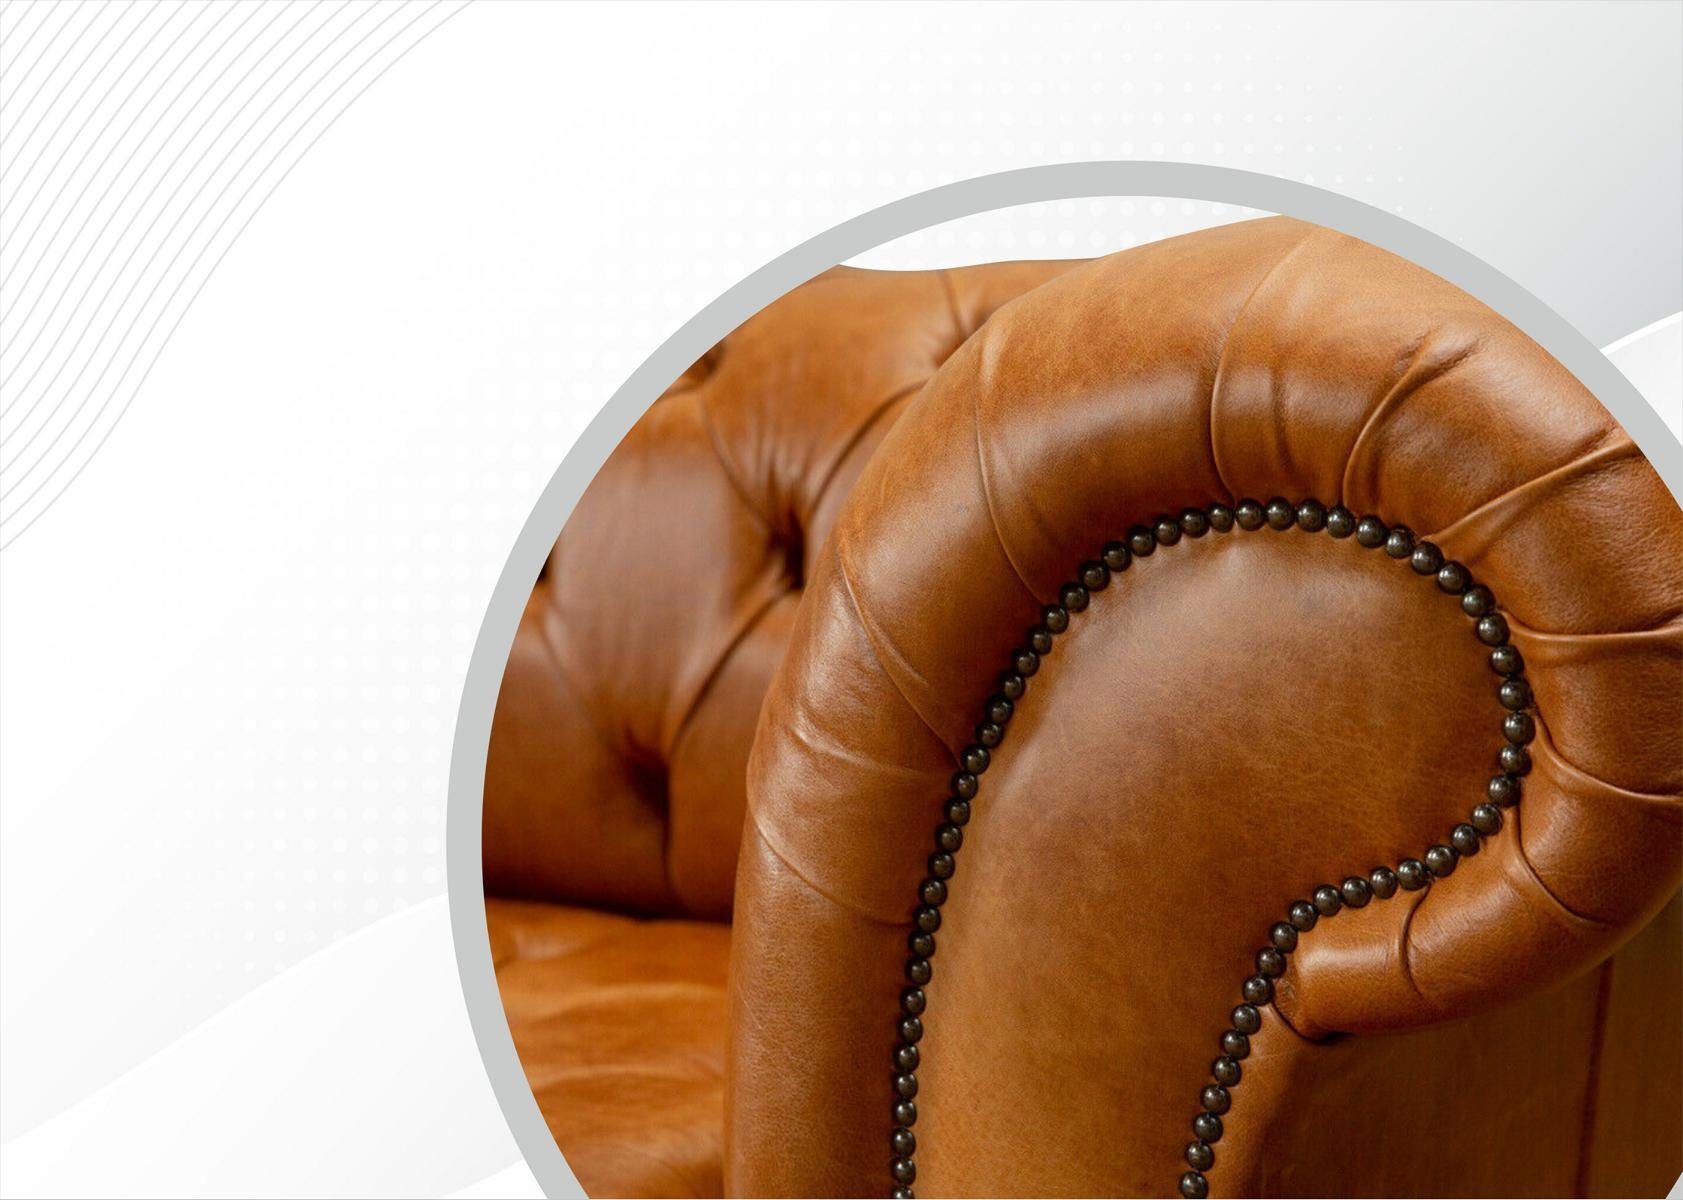 mit Couch cm, 3 Chesterfield Knöpfen. Sitzer Rückenlehne JVmoebel Design Die Chesterfield-Sofa, 220 Sofa